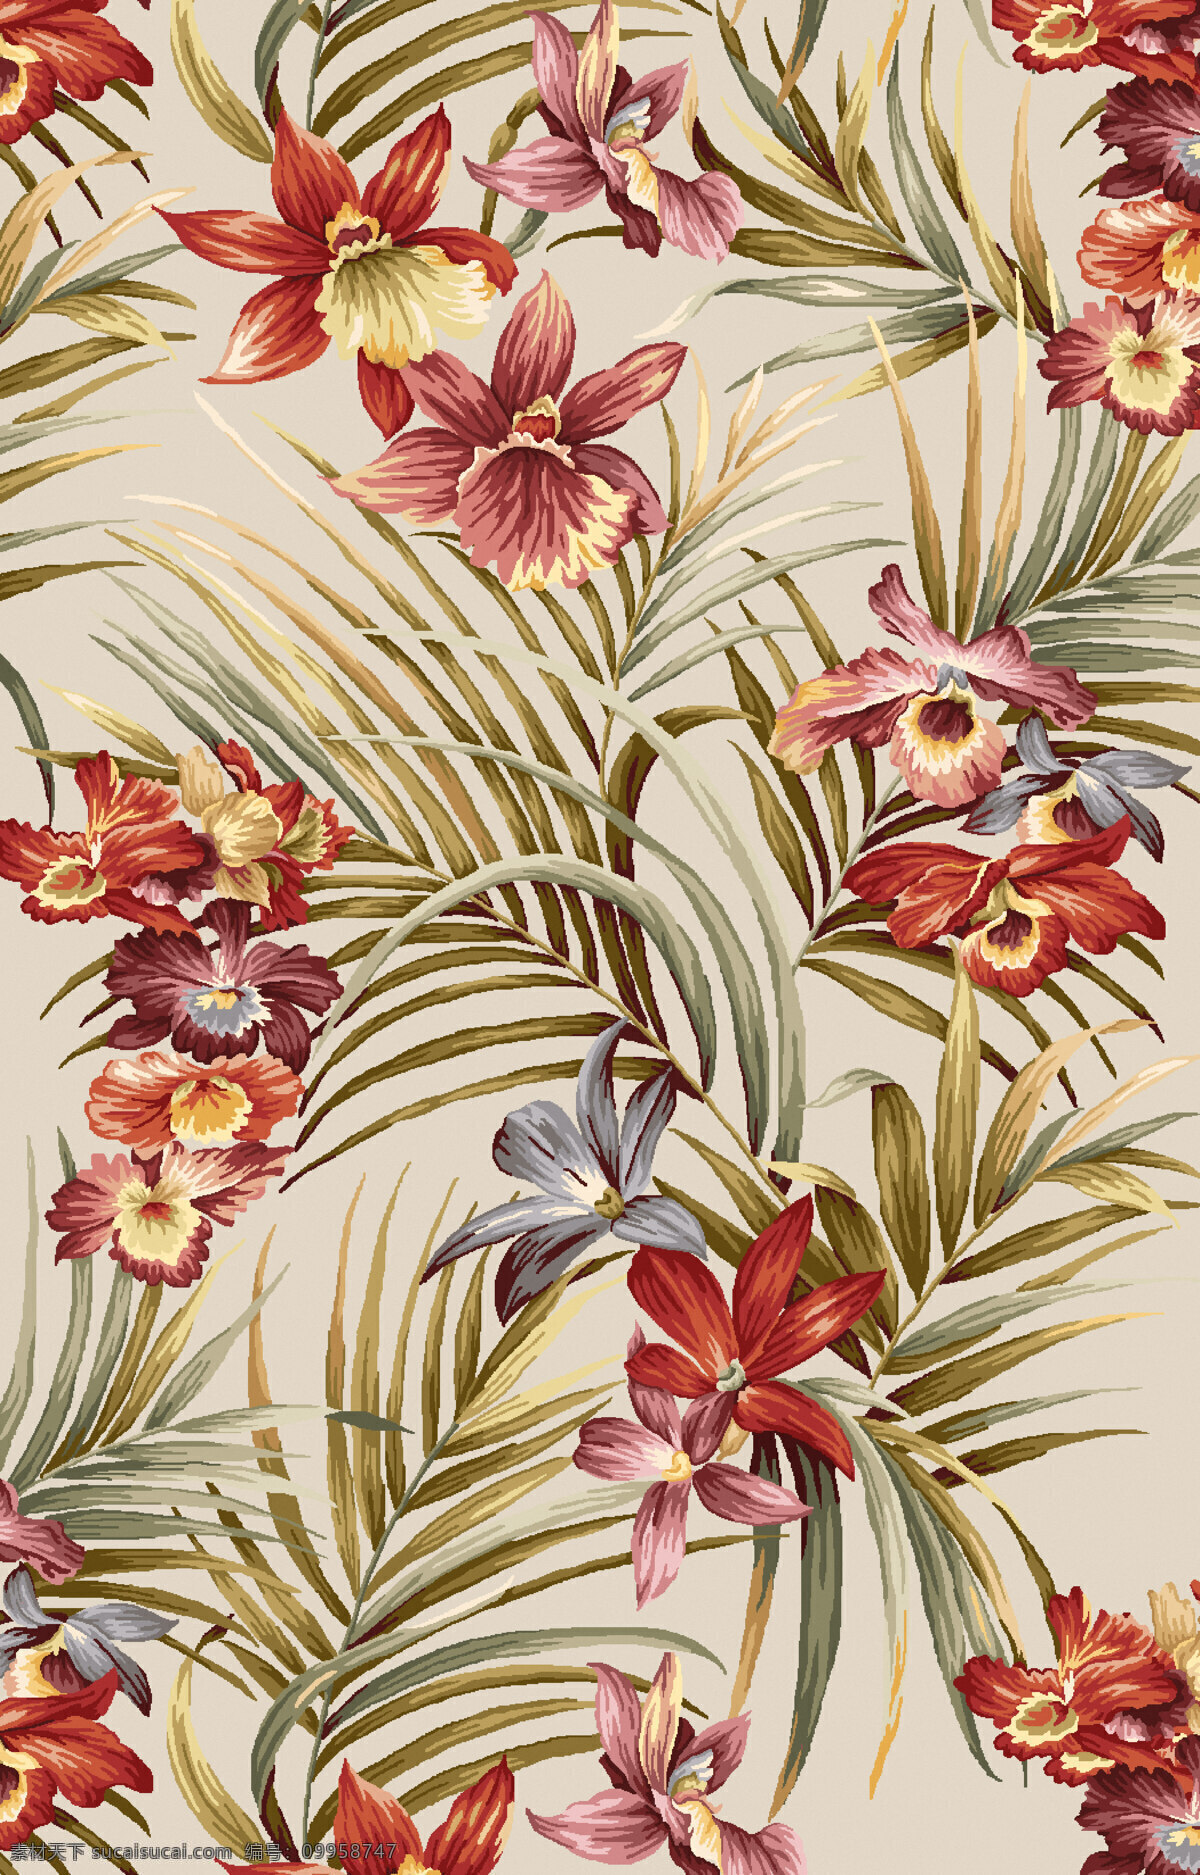 纺织面料 沙发布艺 纹饰 纹样 地毯图案设计 花卉植物围边 底纹边框 背景底纹